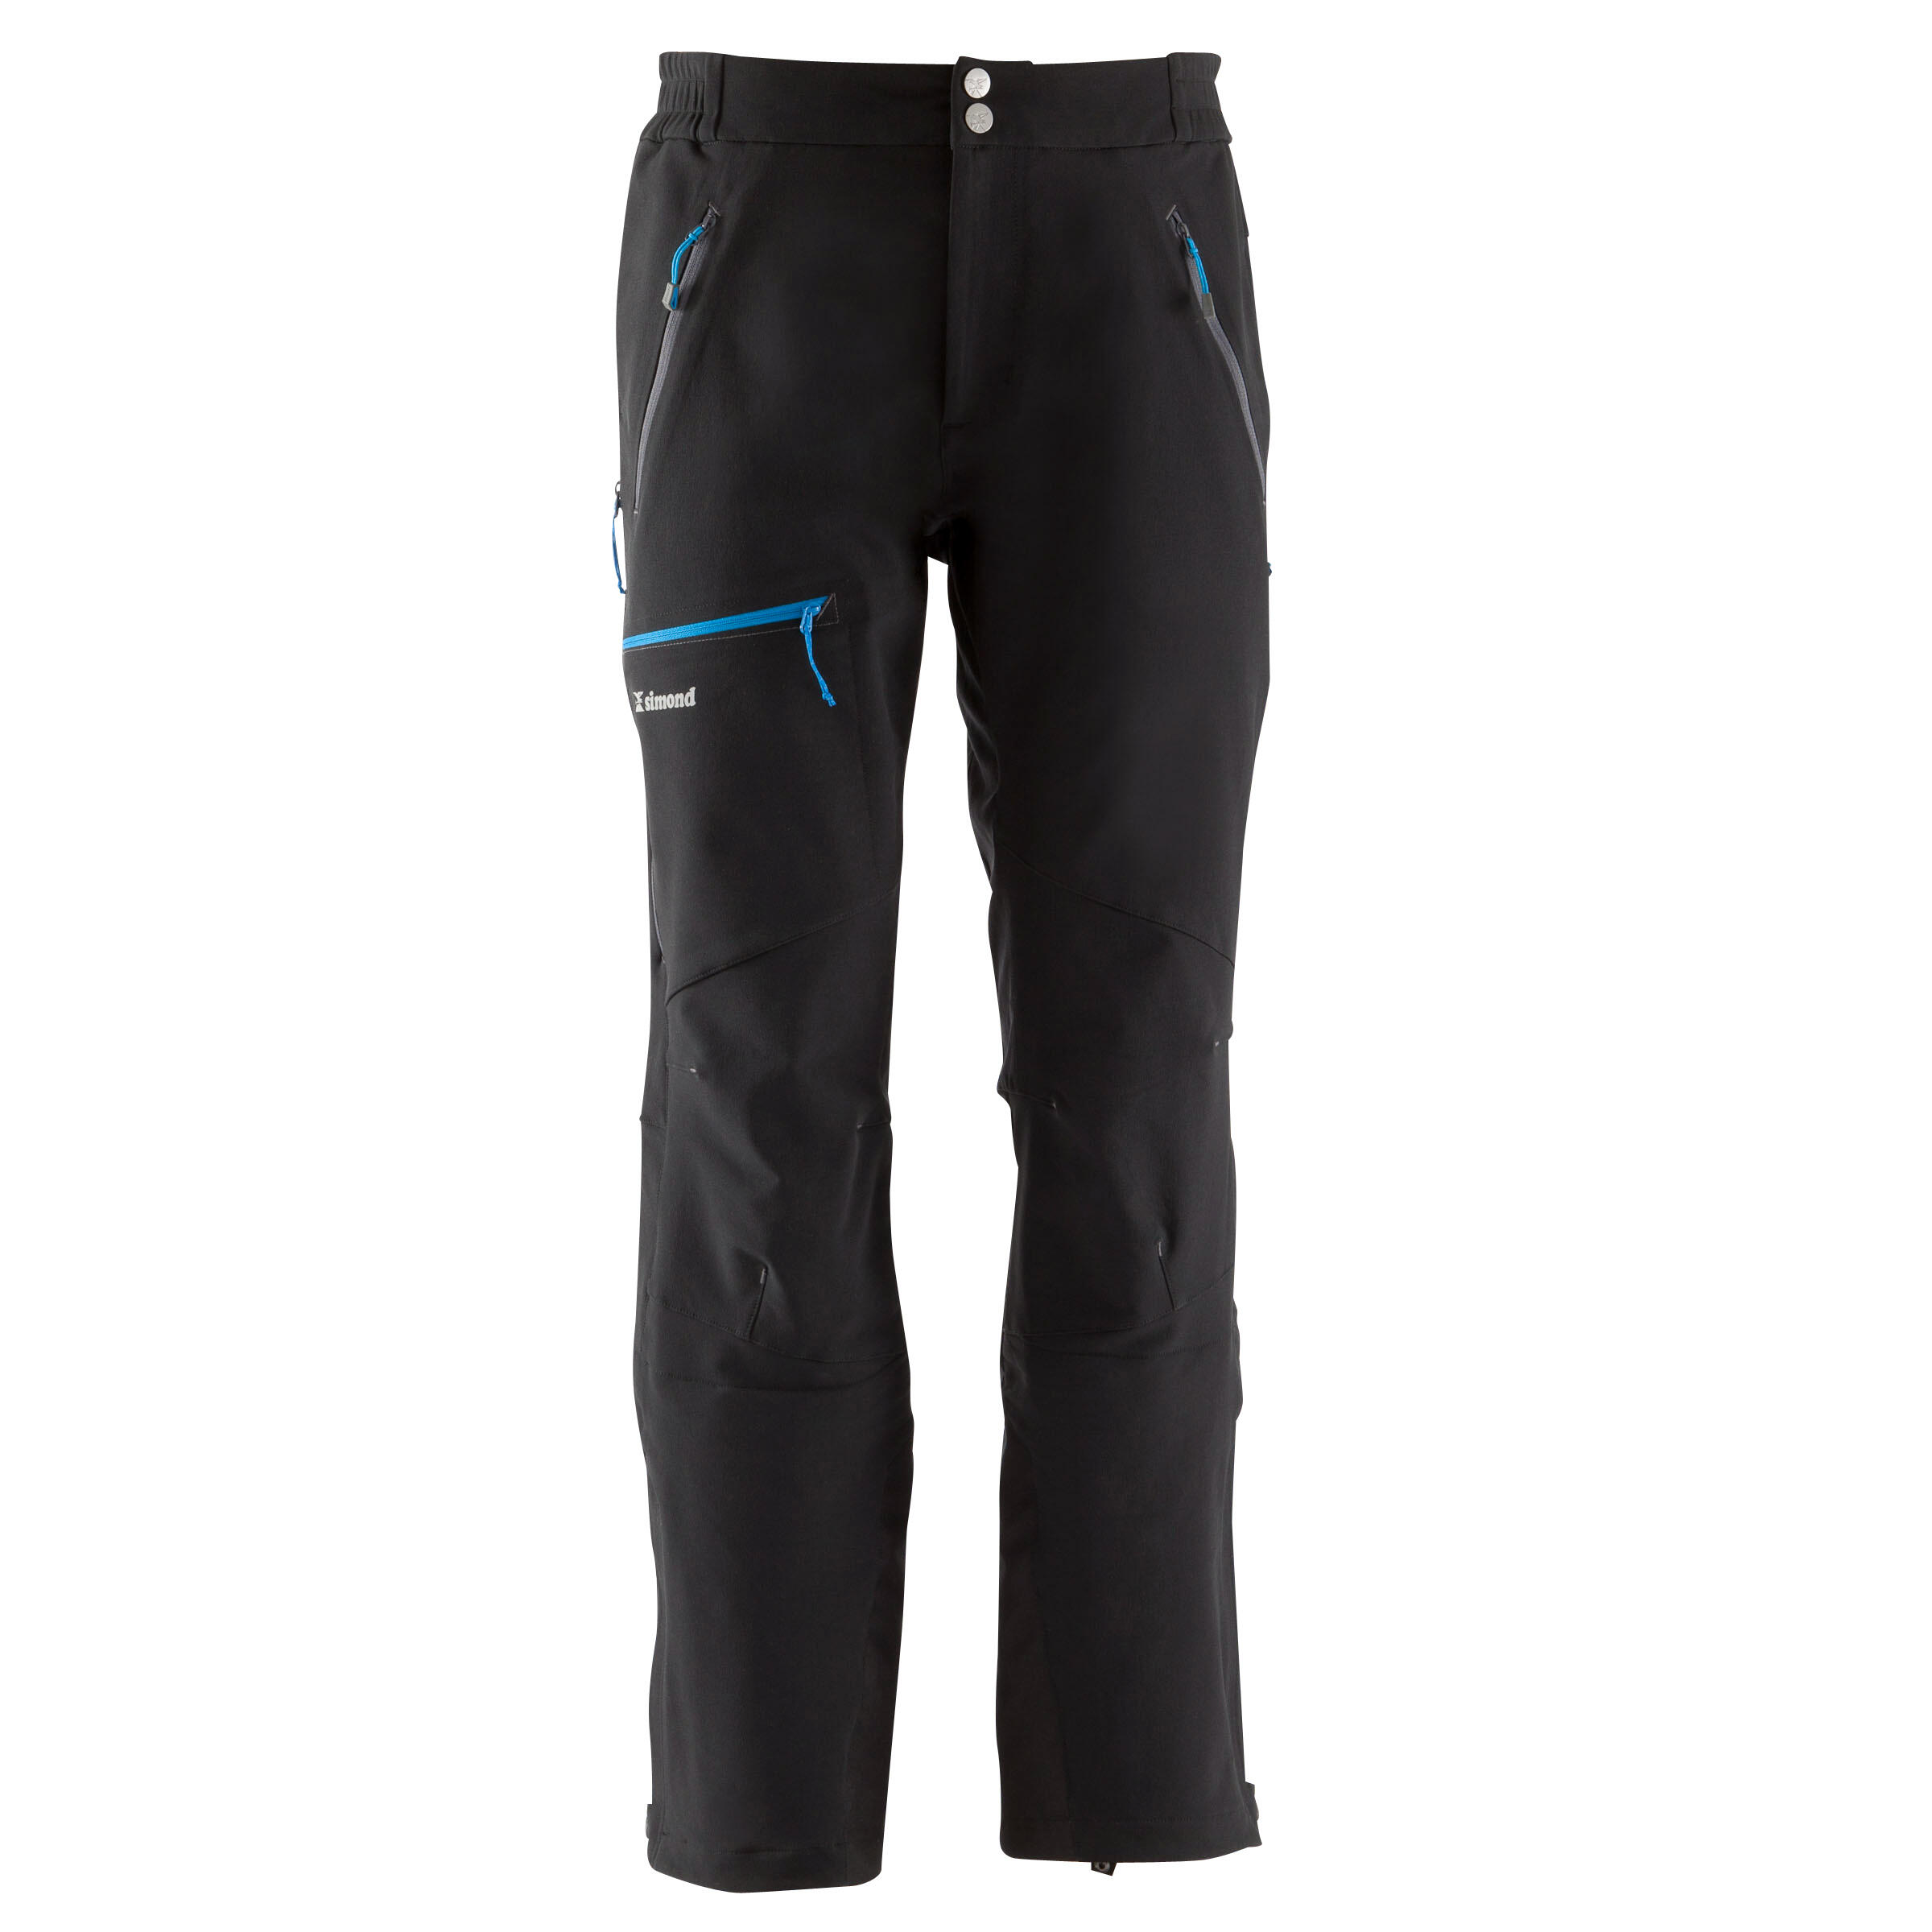 Decathlon - Quechua MH500, Hiking Pants, Men's - Walmart.com